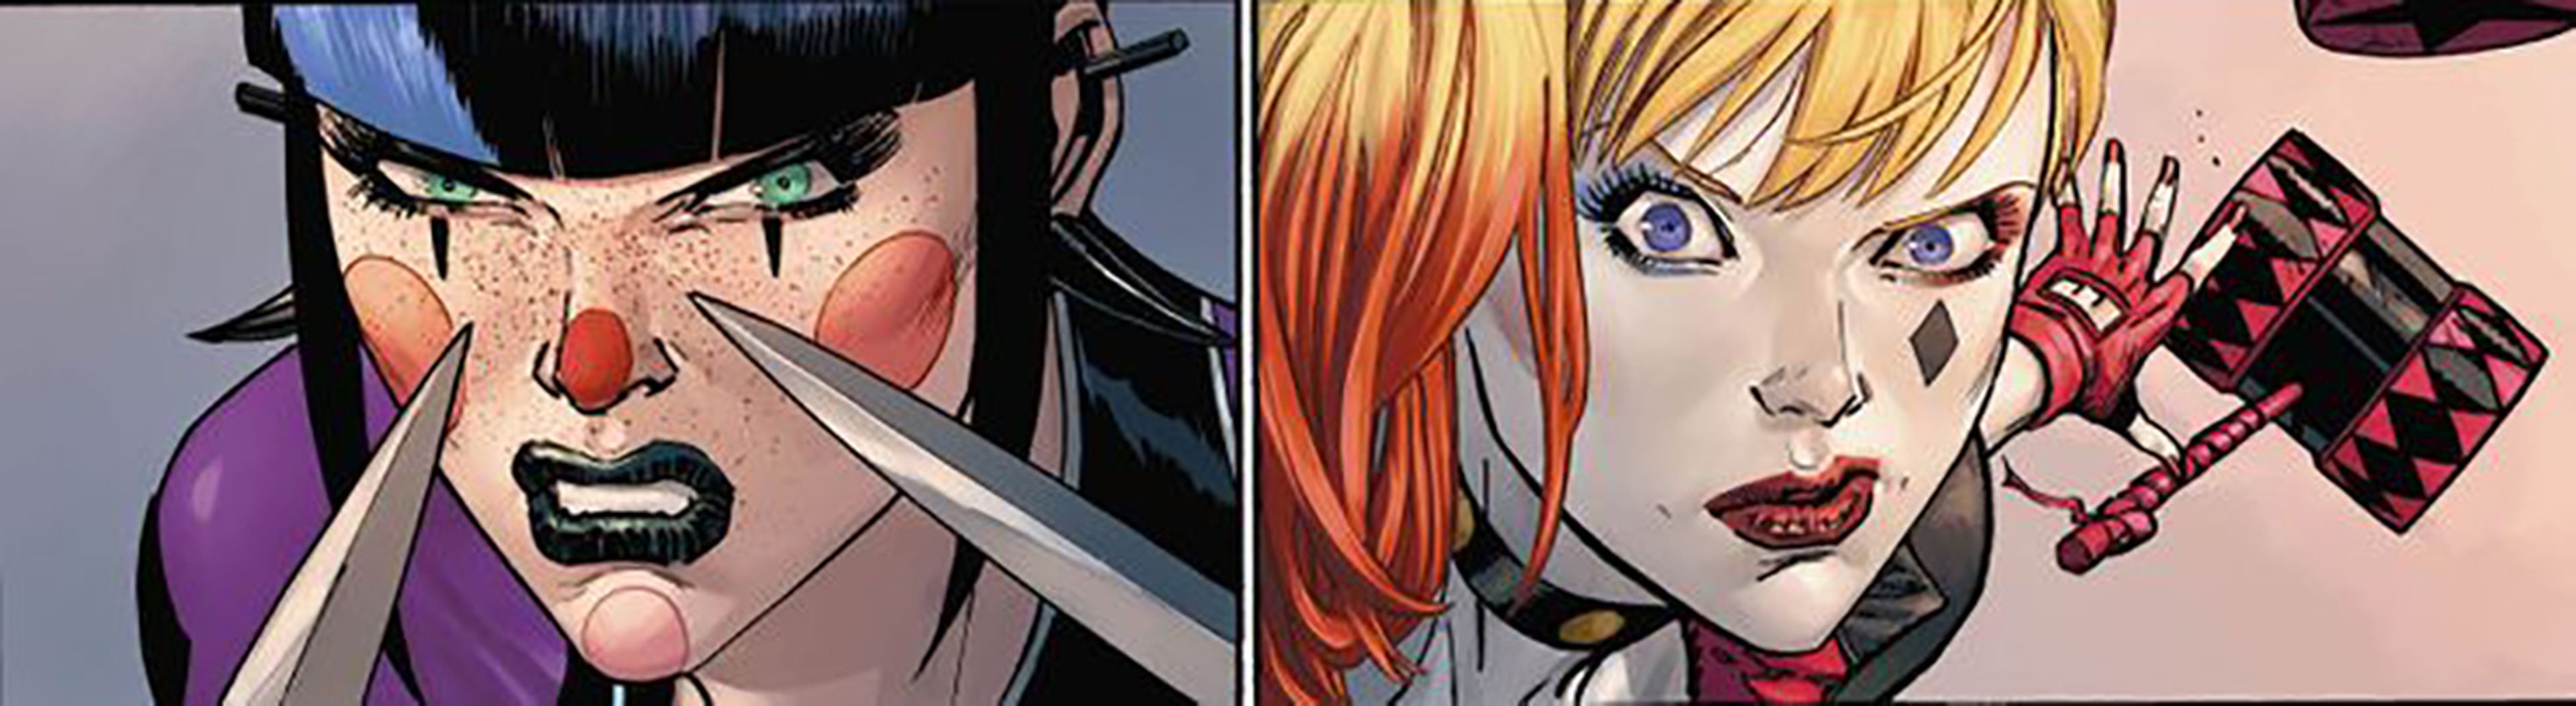 Punchline v Harley Quinn